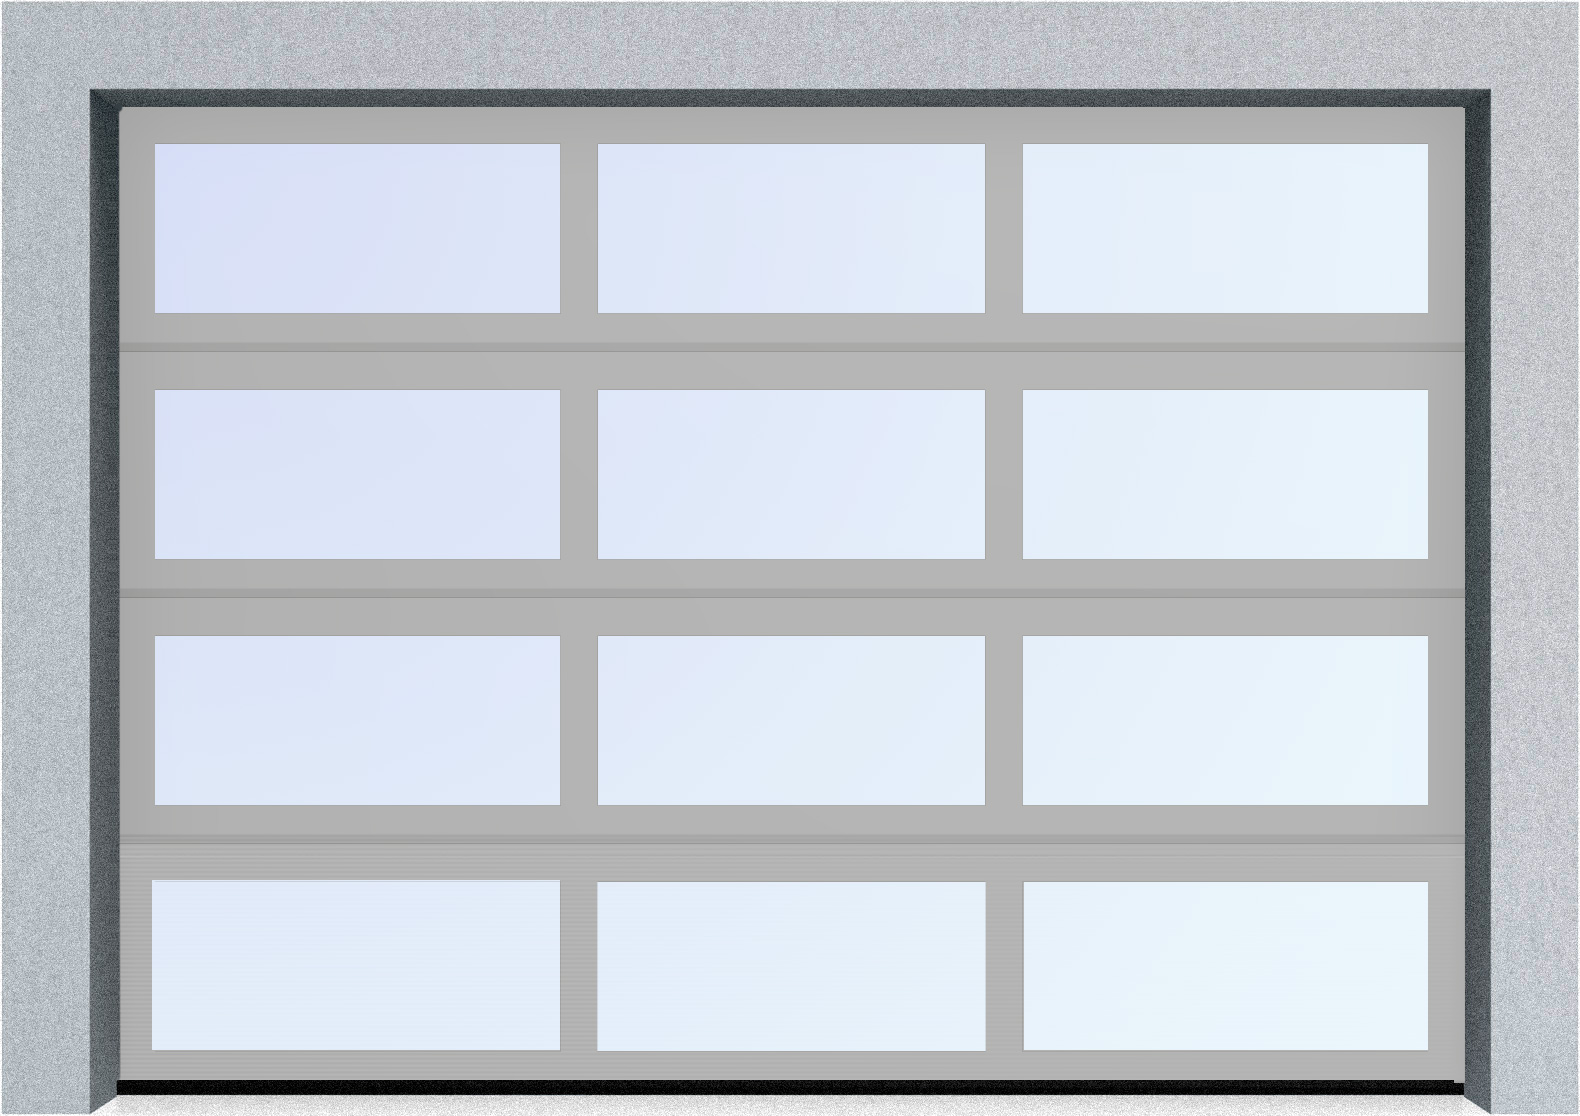  Секционные панорамные ворота серии AluTrend (АЛП) 2250х2375 нижняя панель стандартные цвета, фото 9 